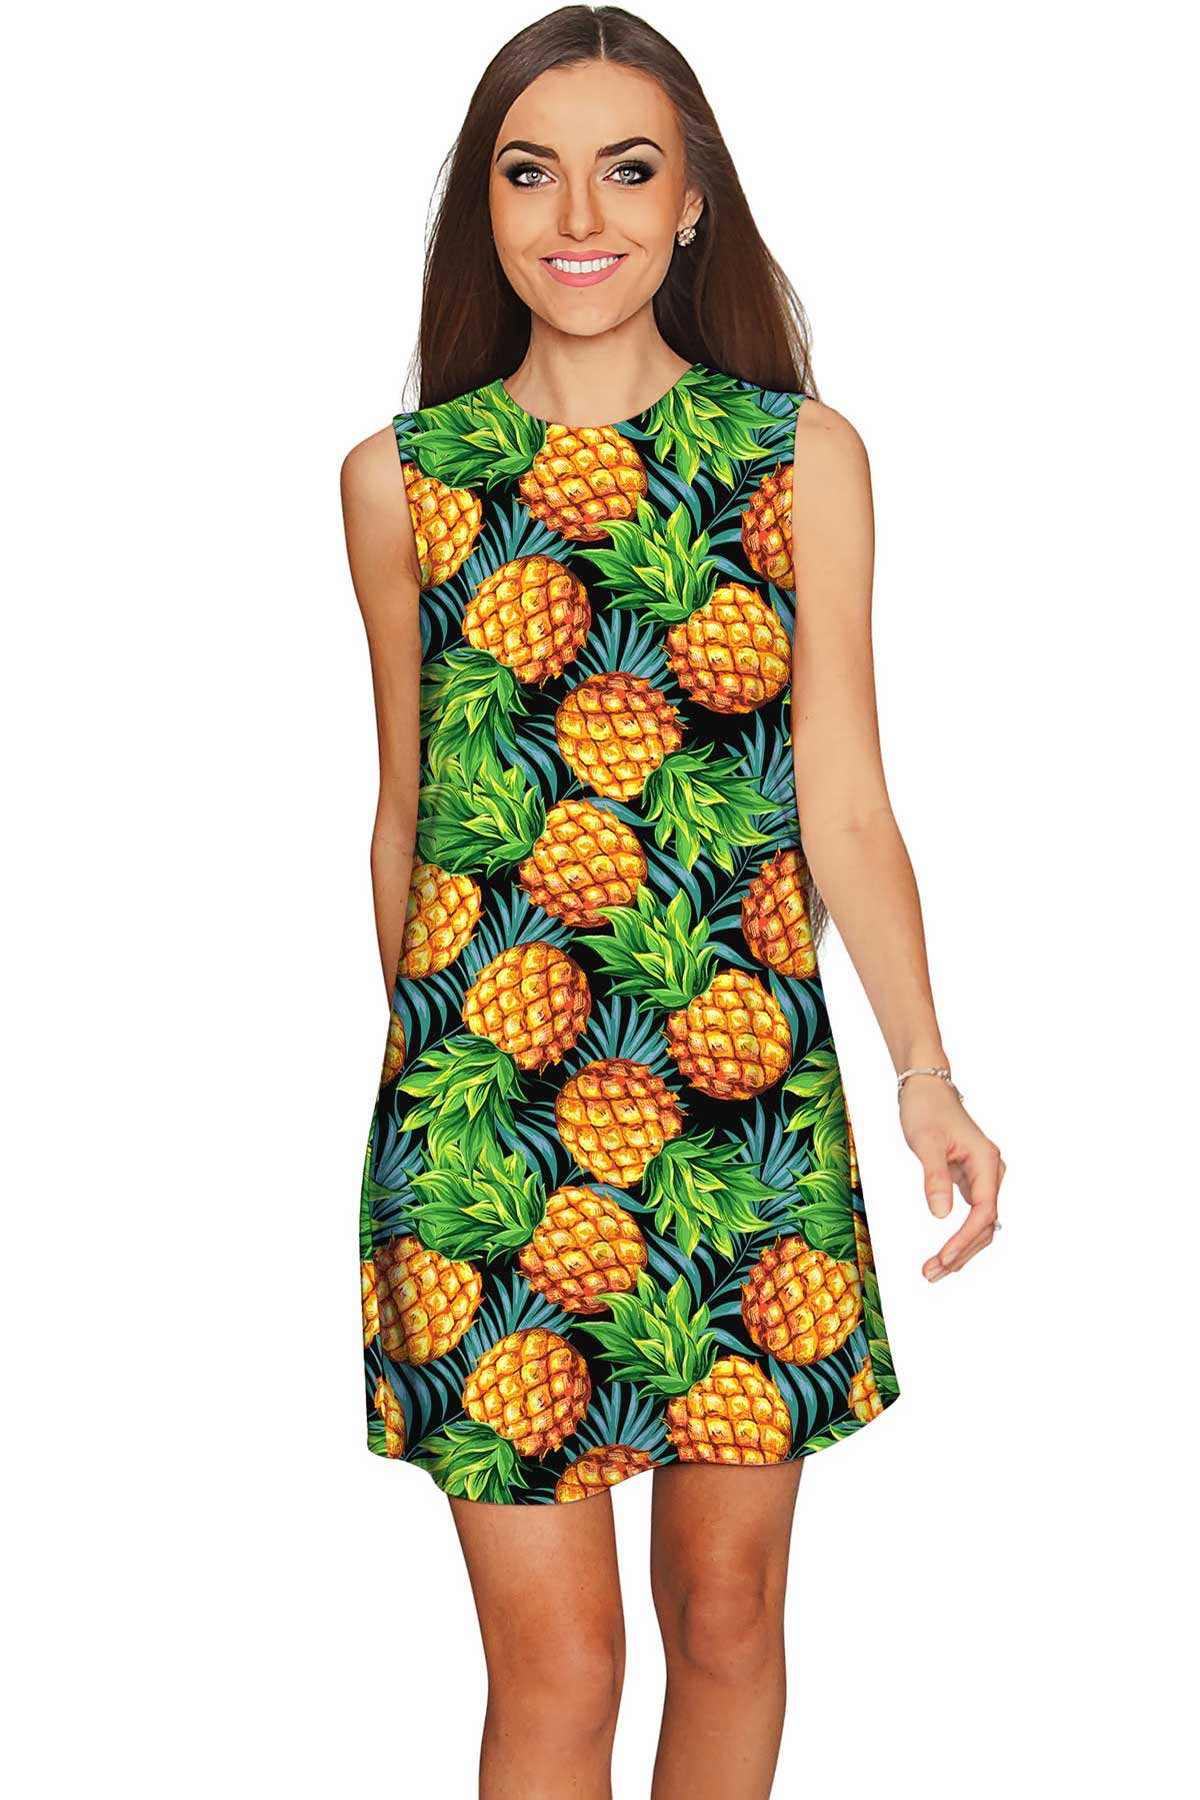 Endless Summer Adele Green Pineapple Print Shift Dress - Women - Pineapple Clothing